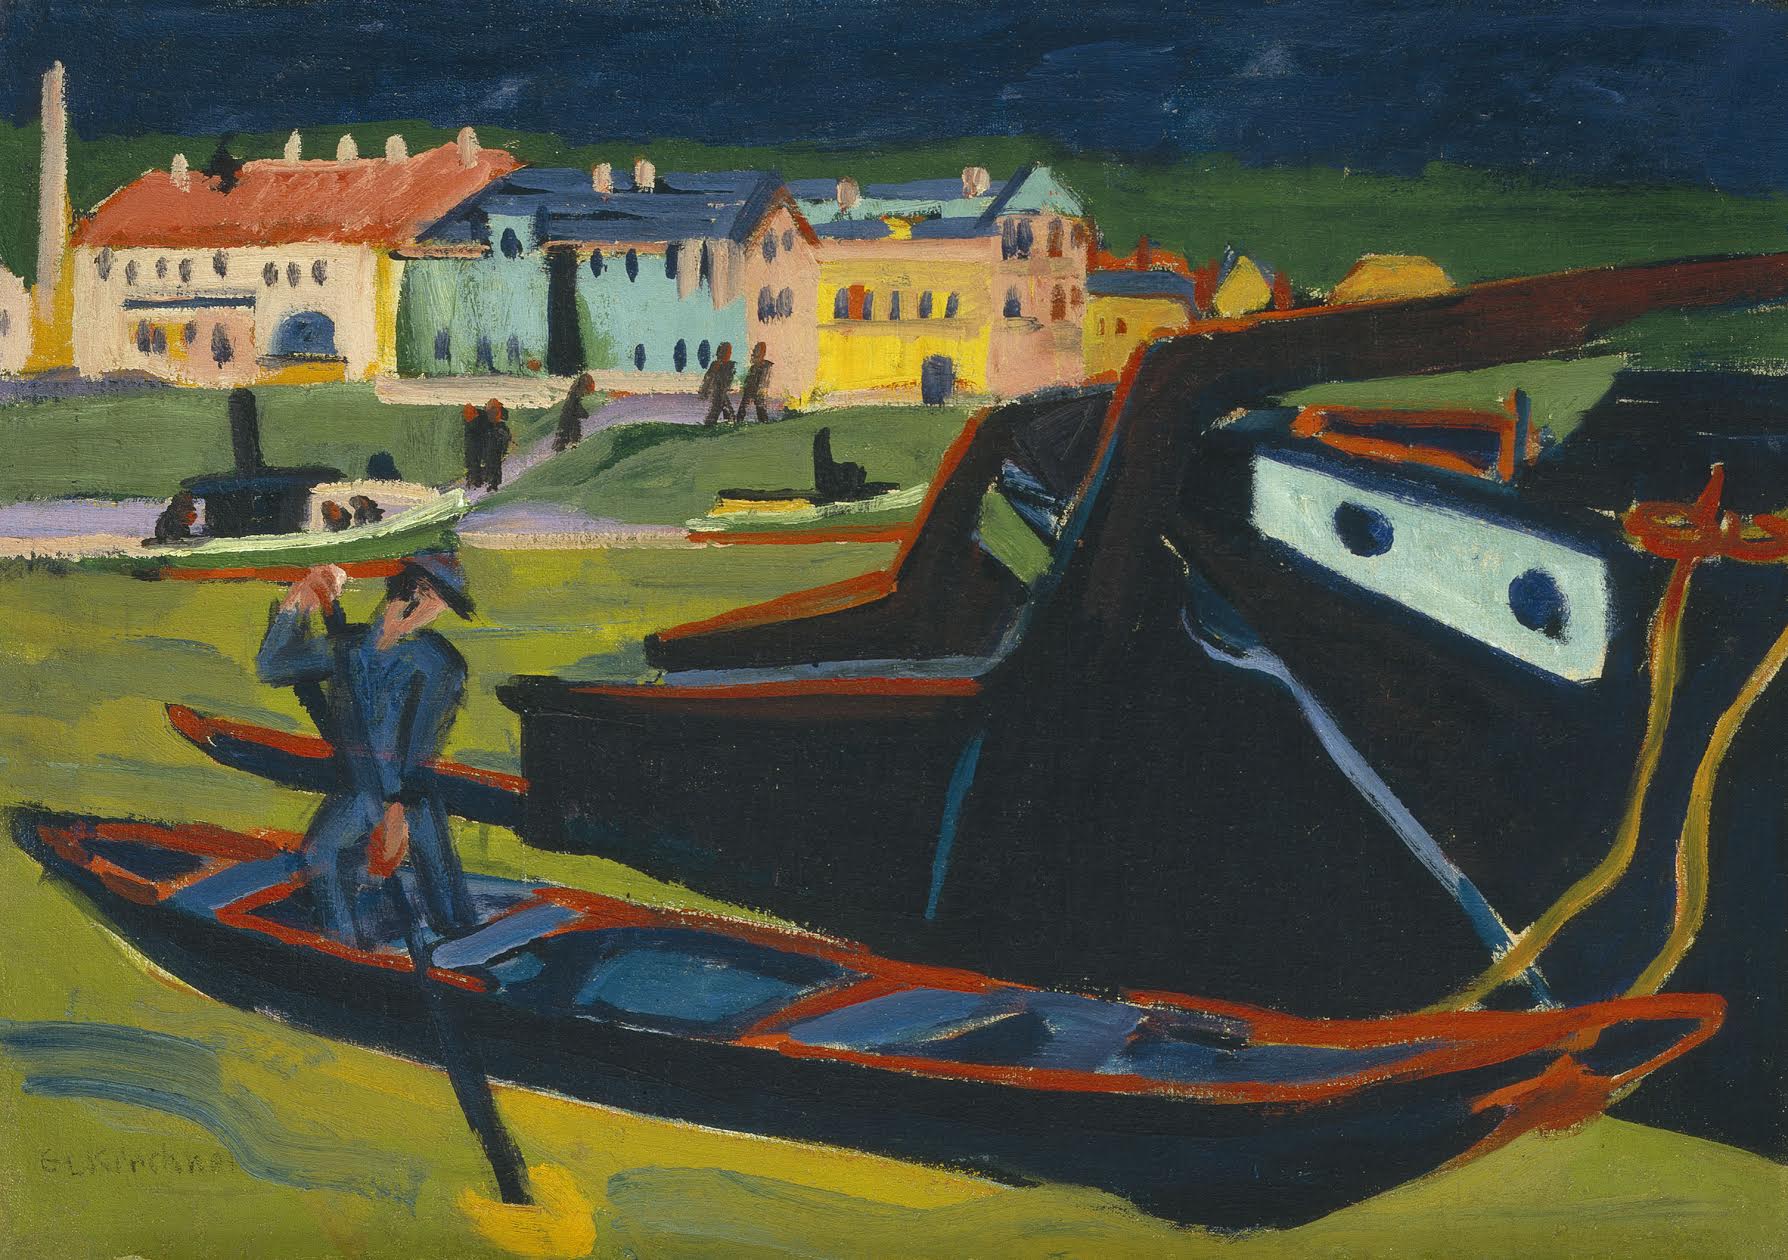 德累斯頓附近易北河上的船隻 by Ernst Ludwig Kirchner - 西元1910年 (重修 1920年) - 24 3/8 x 34 3/4 英吋 (61.9 x 88.3 公分) 